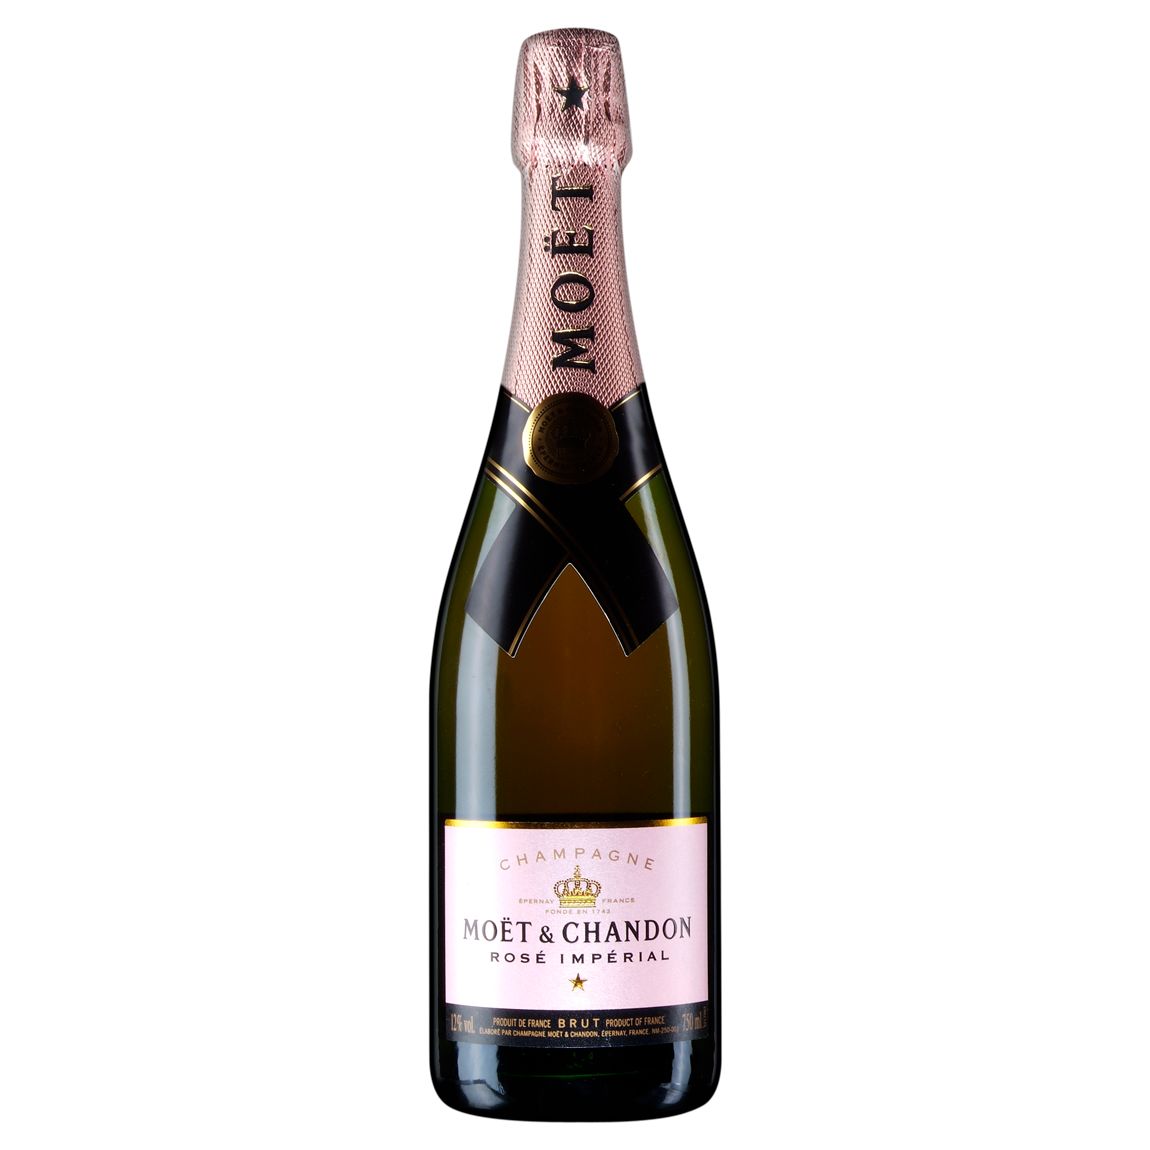 Moët & Chandon Brut Impérial Rosé NV Champagne, France at John Lewis